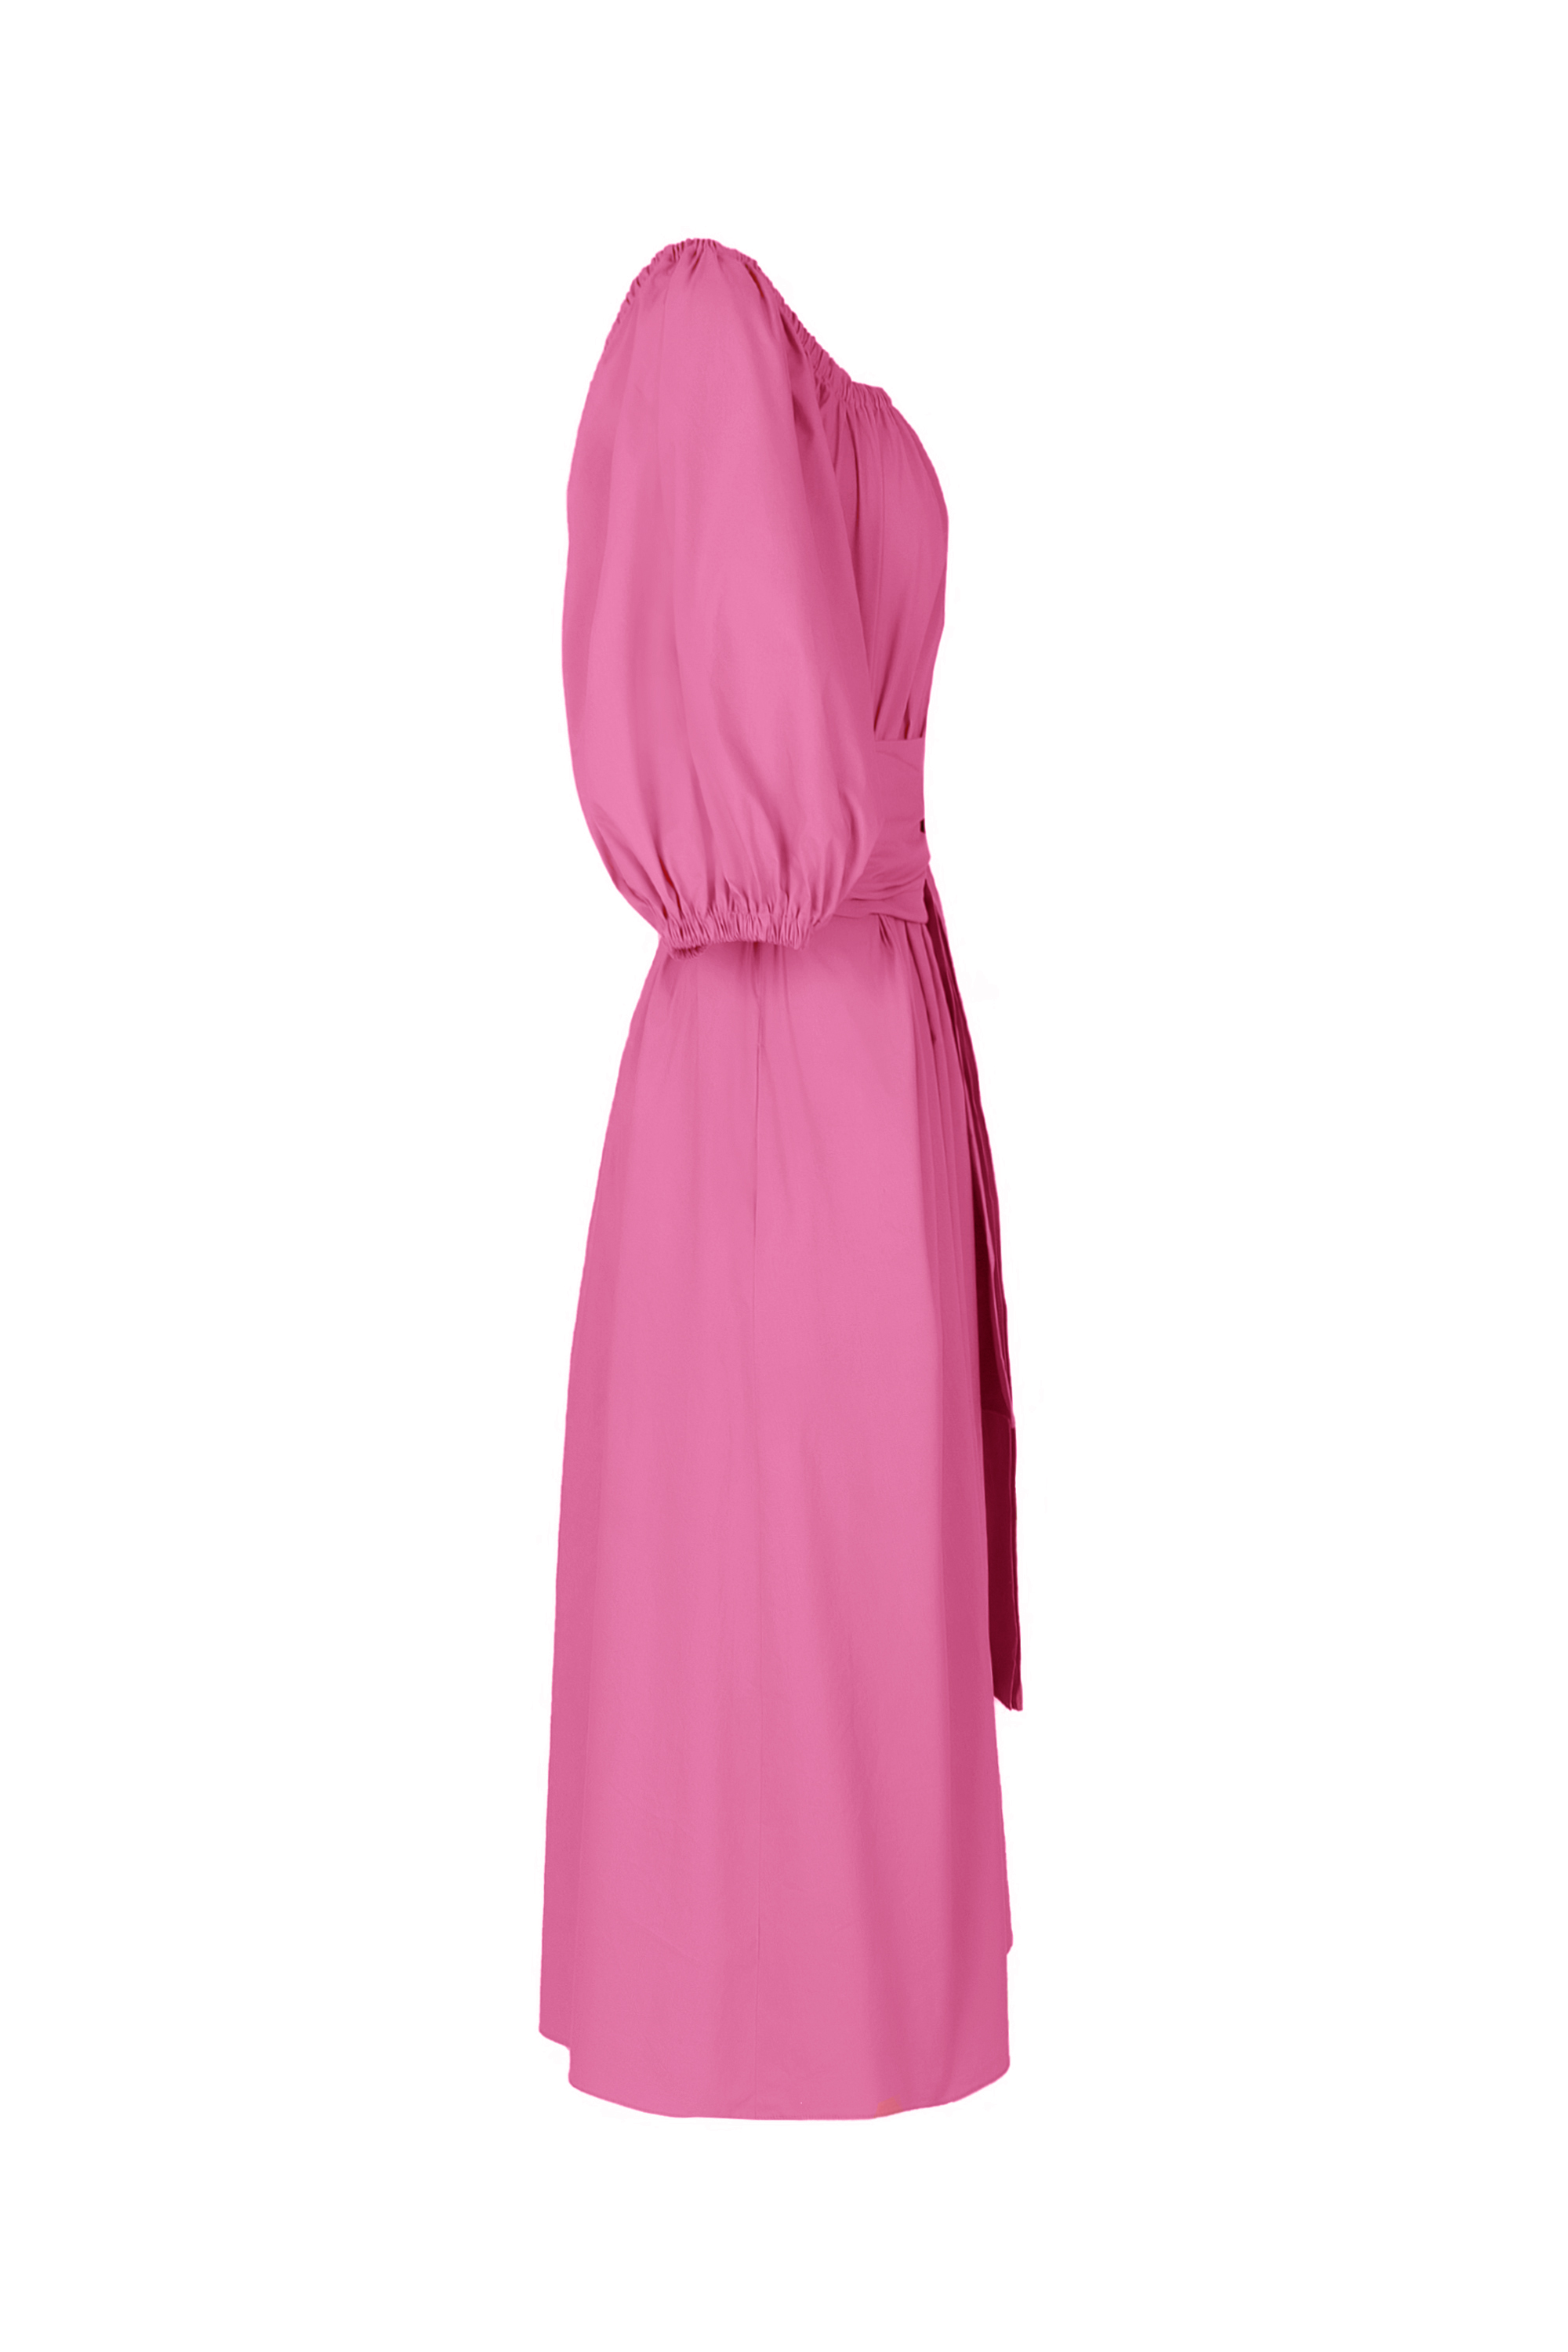 Платье женское 5К-10966-2